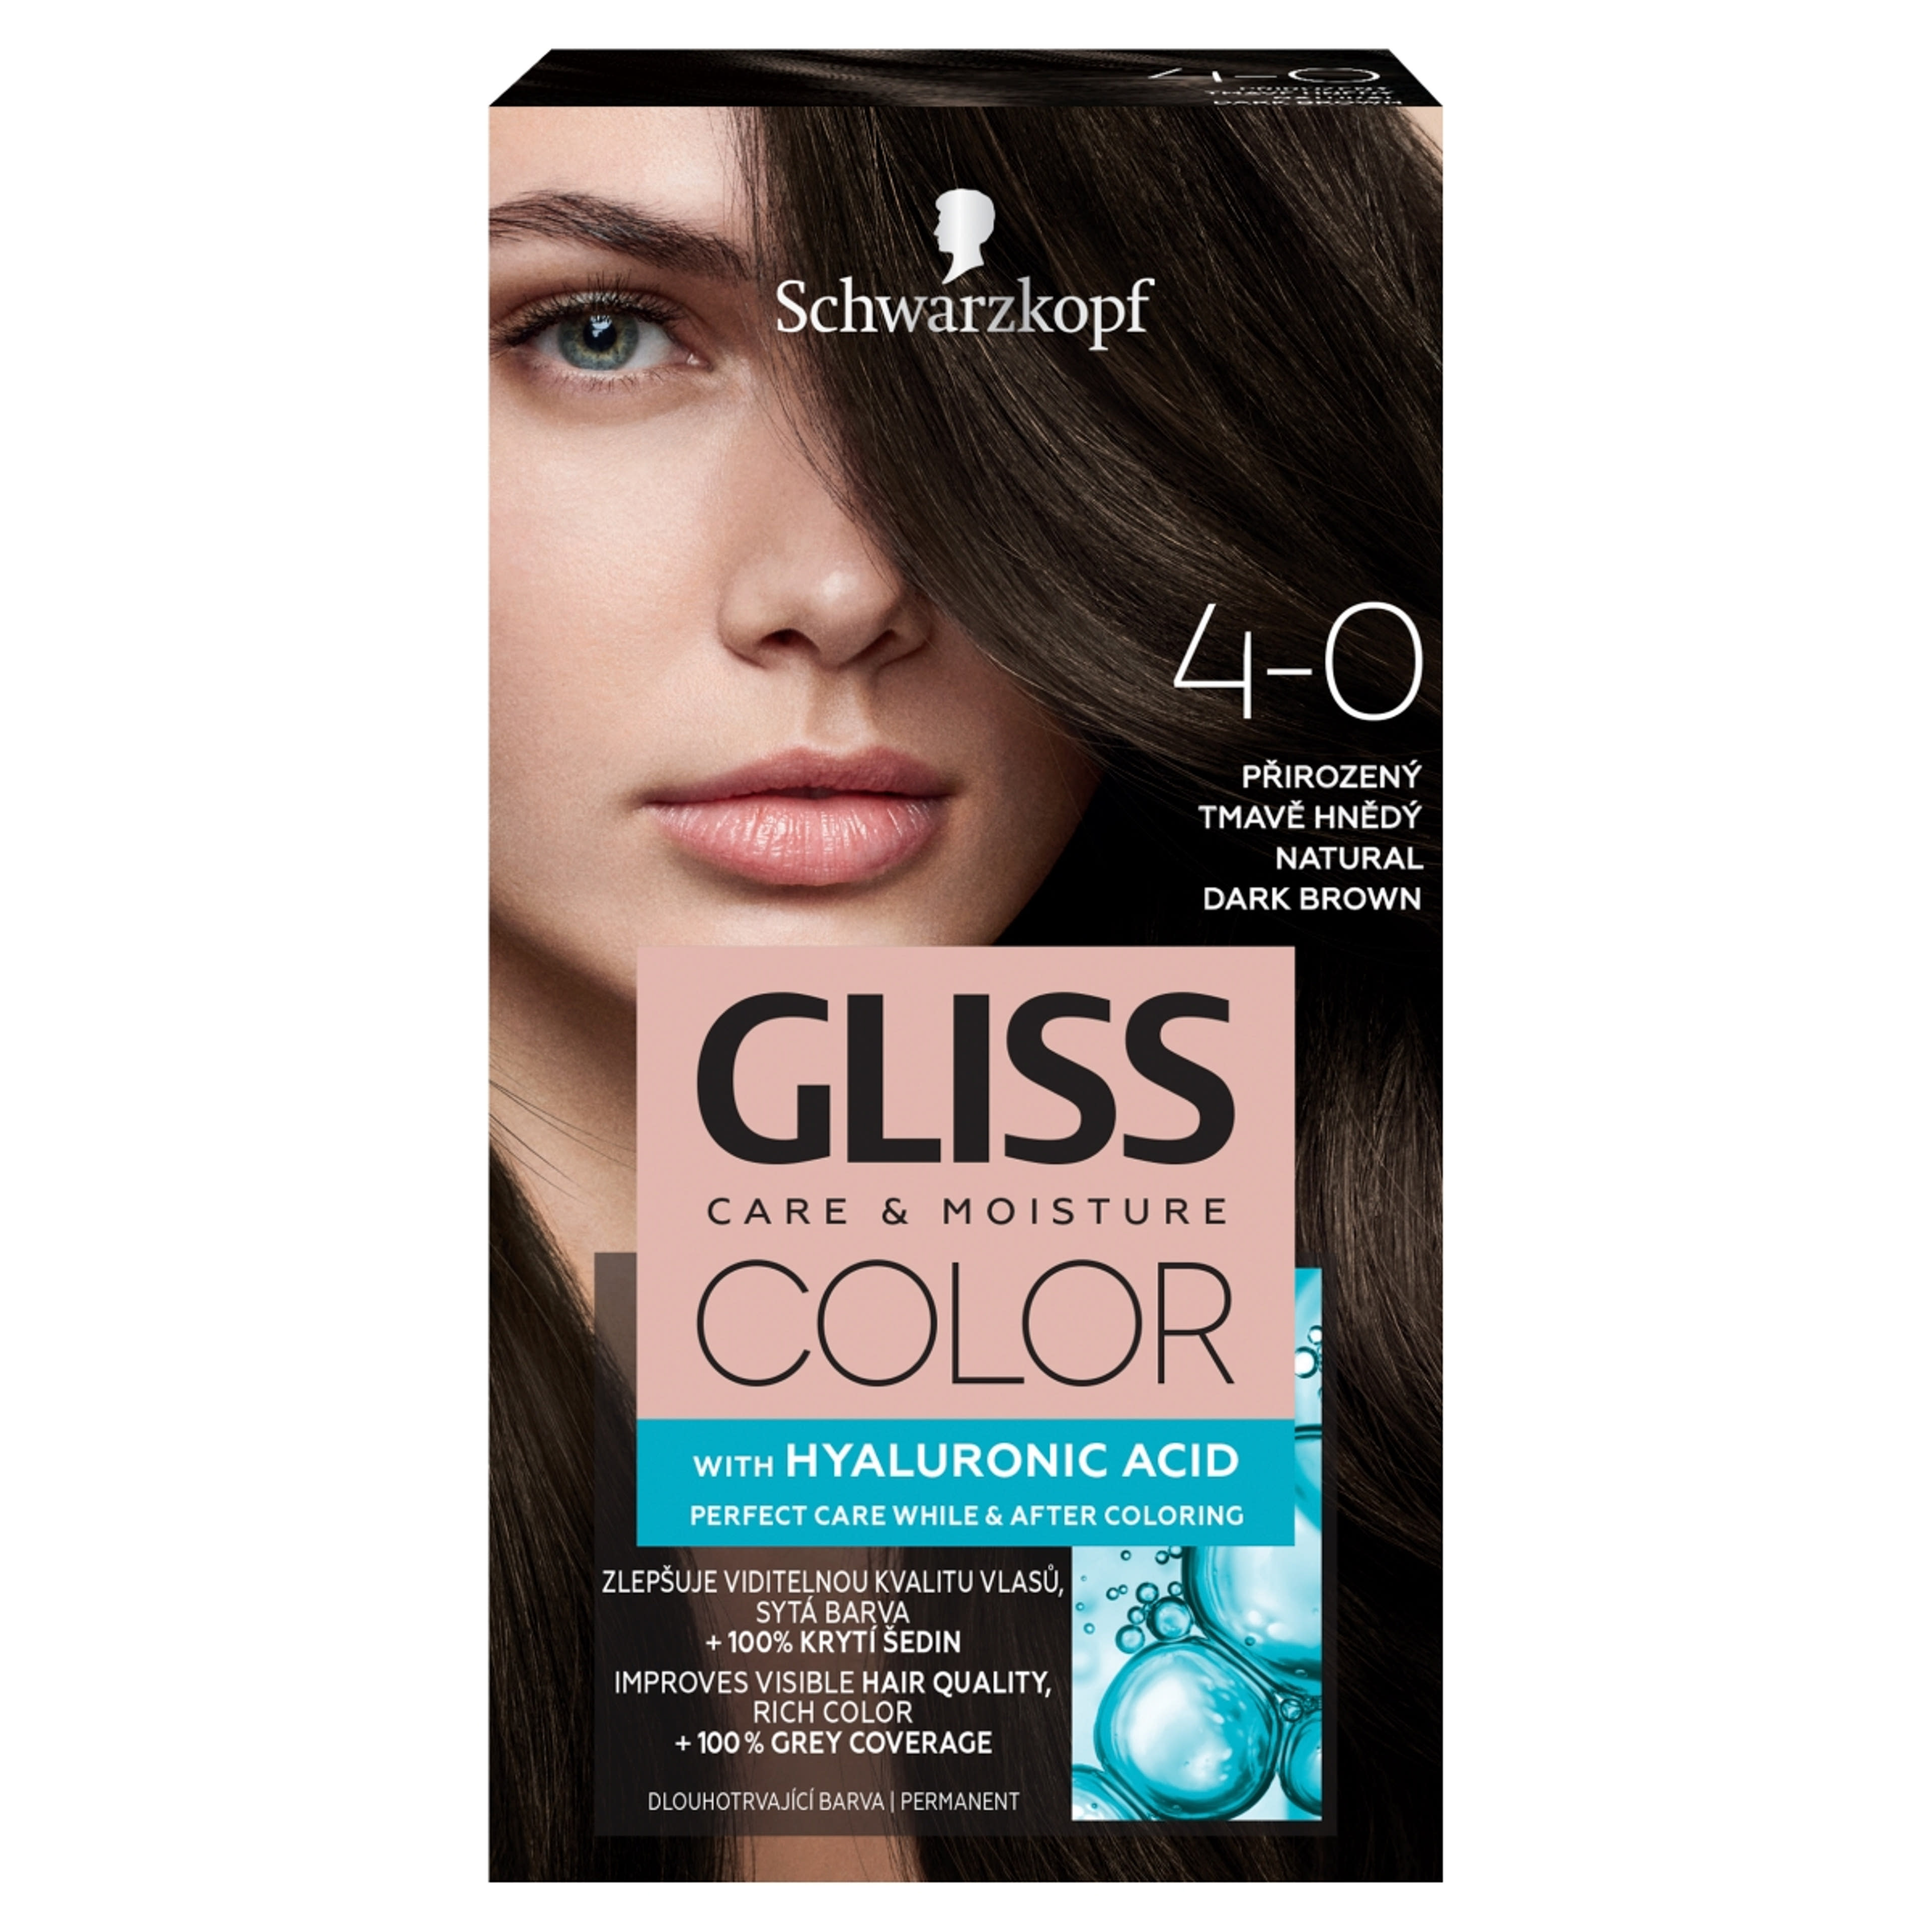 Gliss Color tartós hajfesték 4-0 Természetes sötétbarna - 1 db